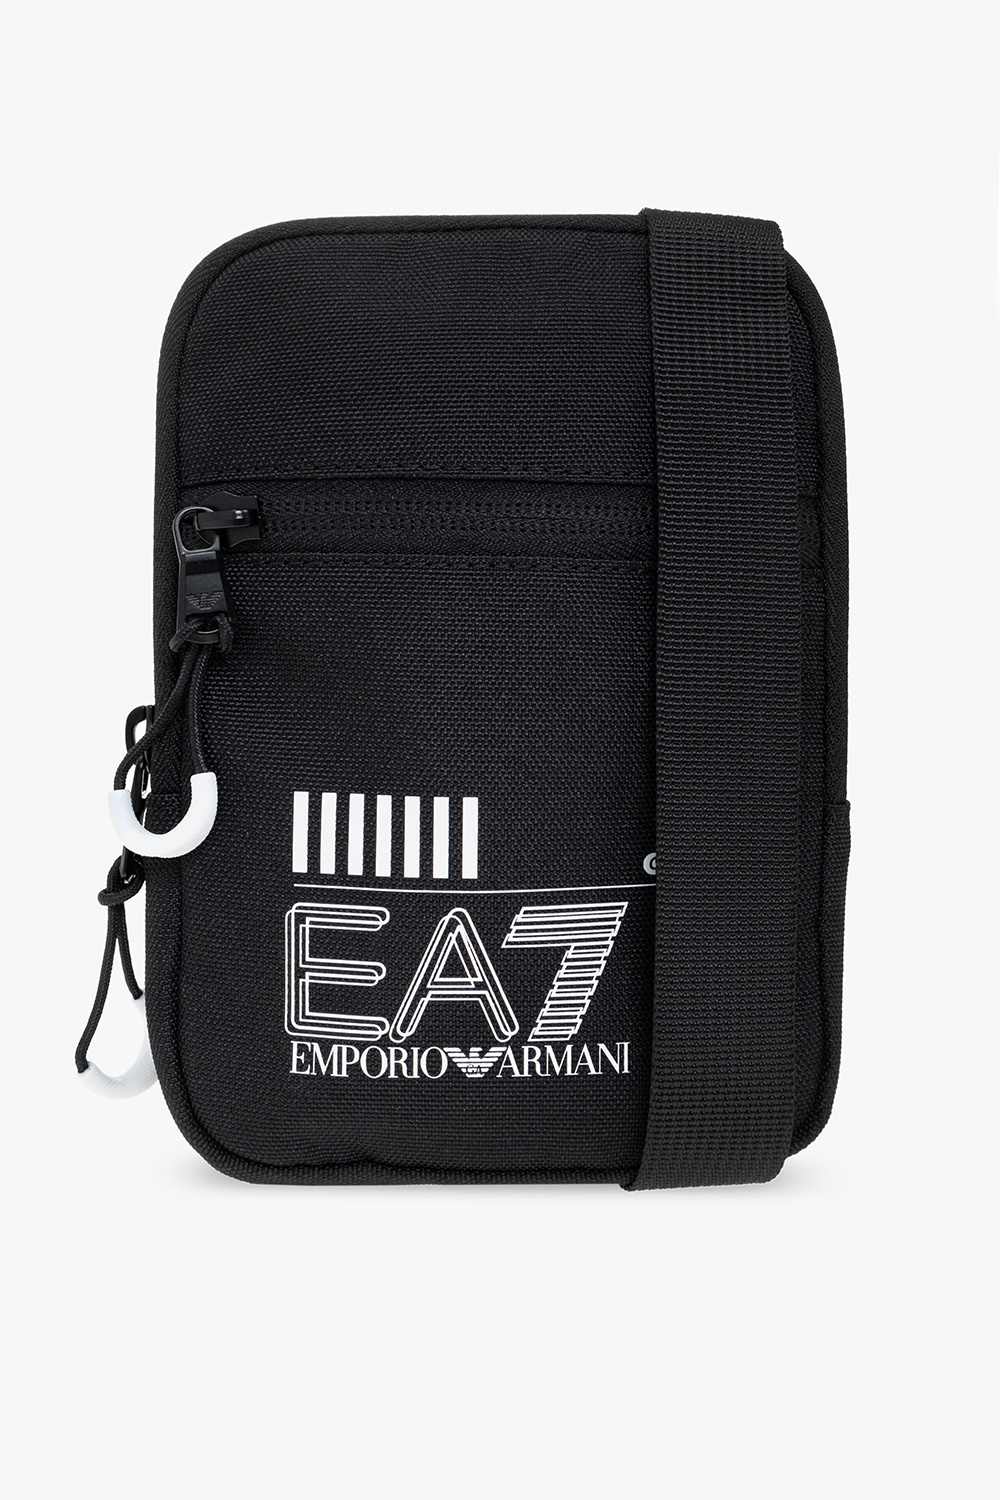 EA7 Emporio Armani ‘Sustainable’ collection shoulder bag | Men's Bags ...